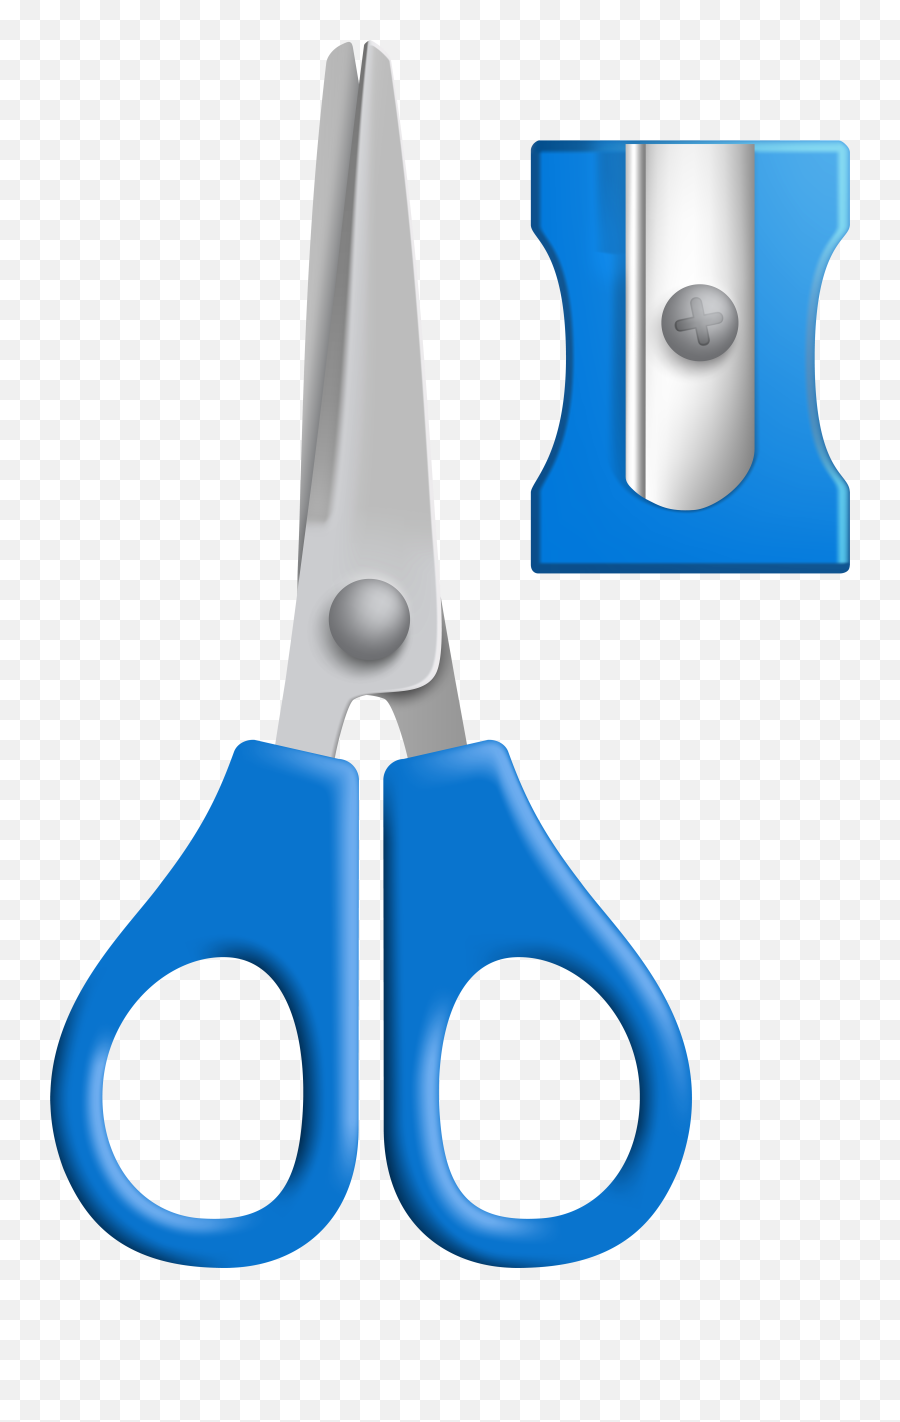 Clipart Scissors Happy Transparent - Scissors And Sharpener Clipart Emoji,Scissors Emoticon